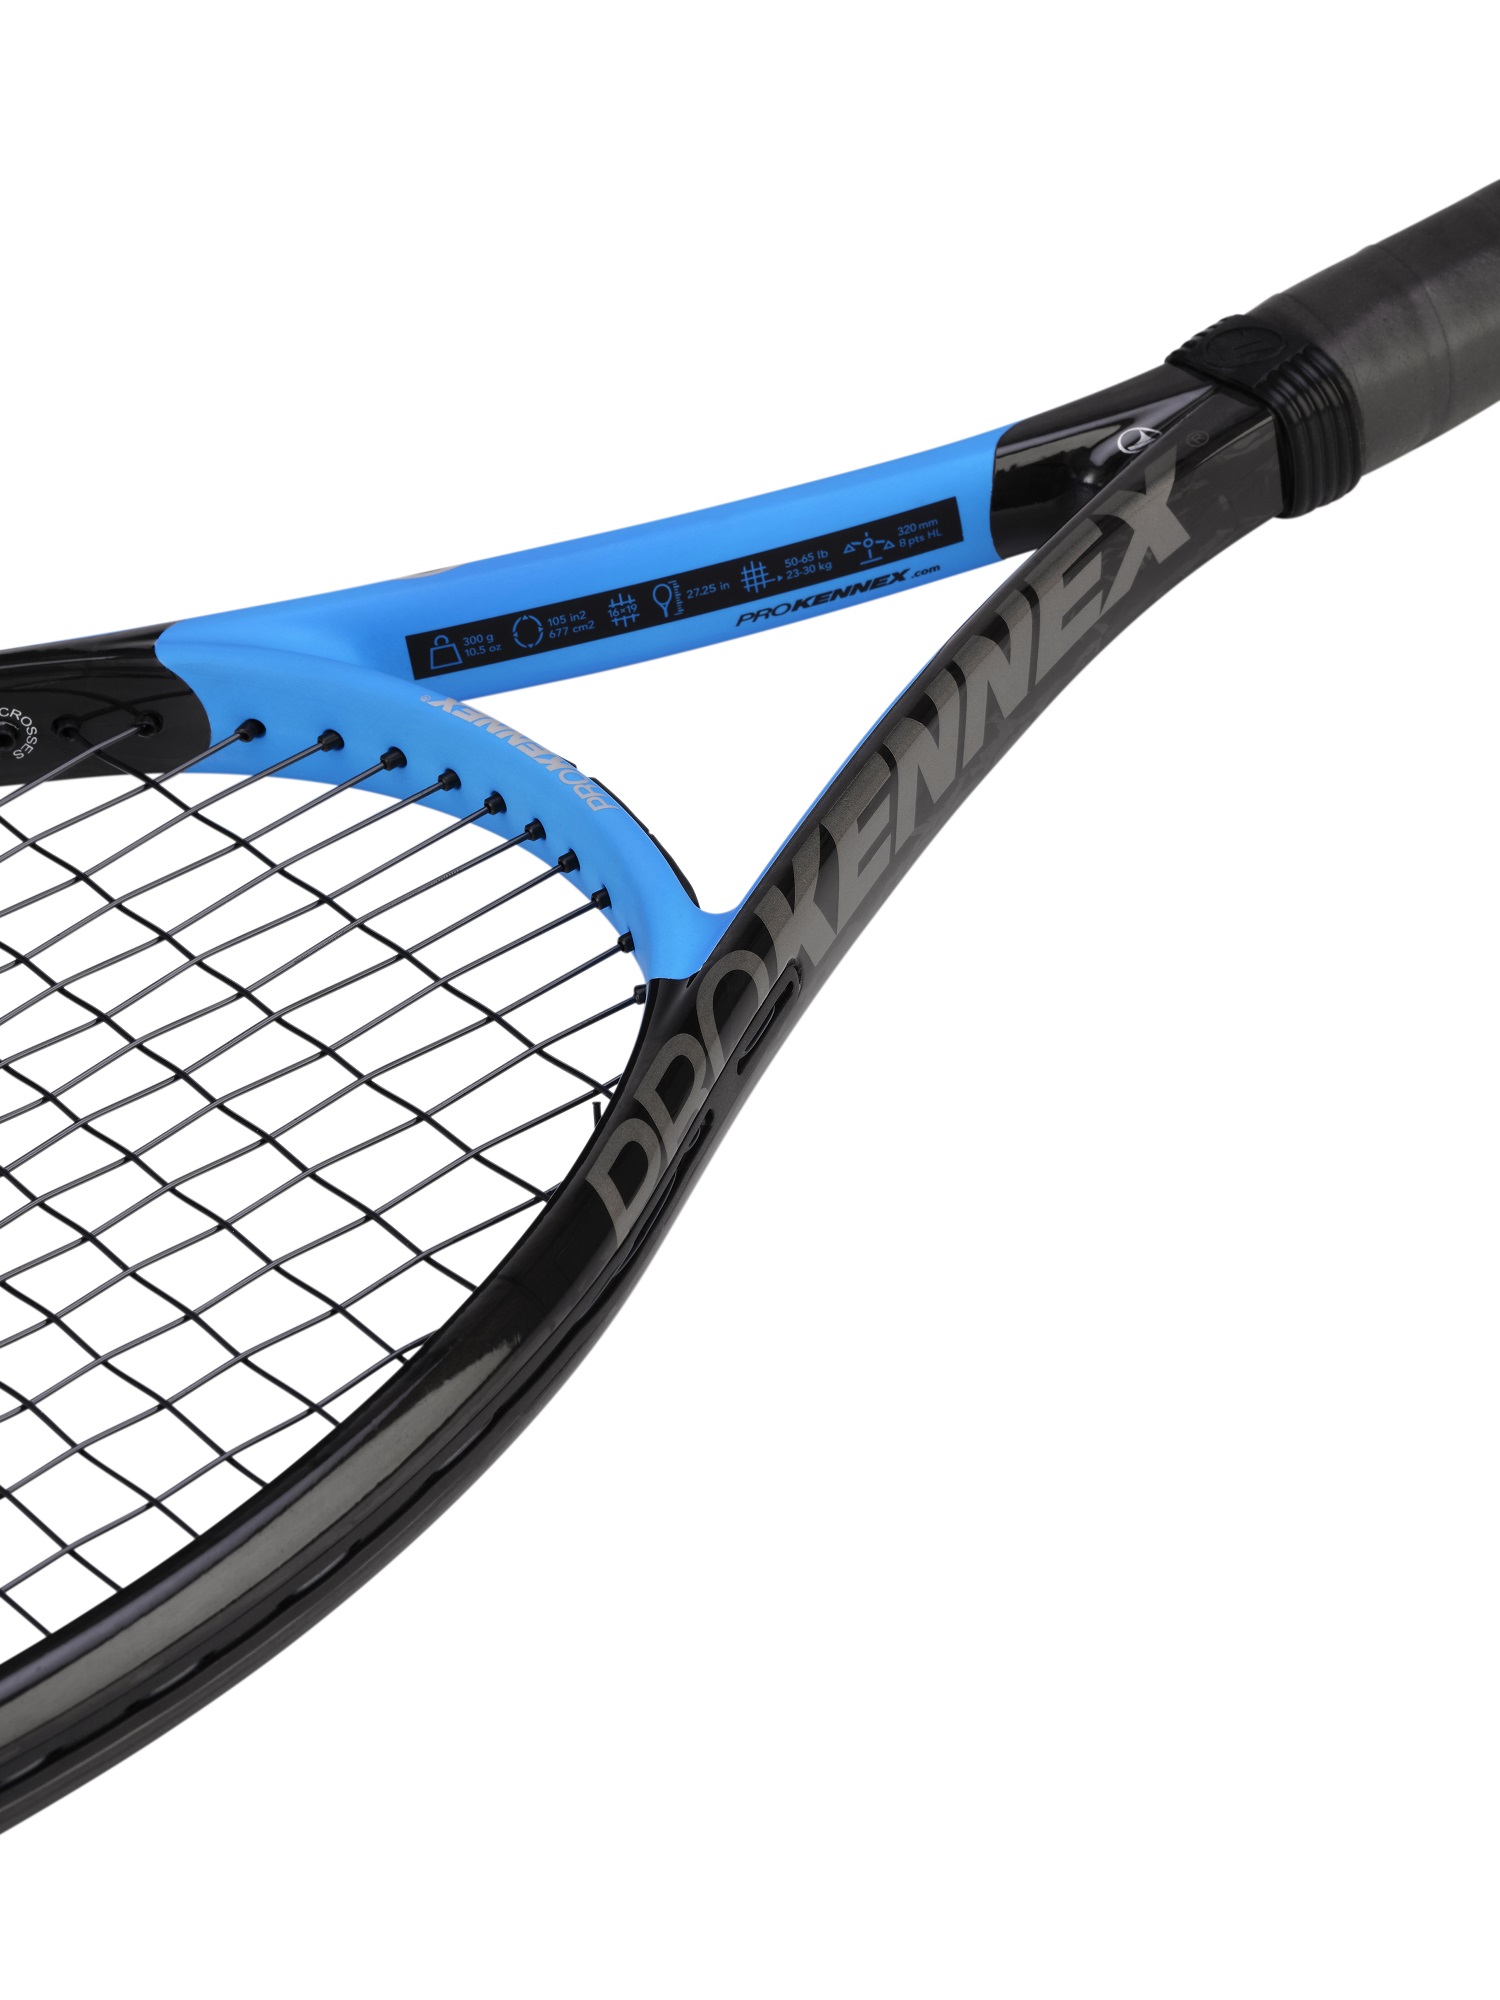 Pro Kennex Tennisschläger Black Ace 105in/300g blau - unbesaitet